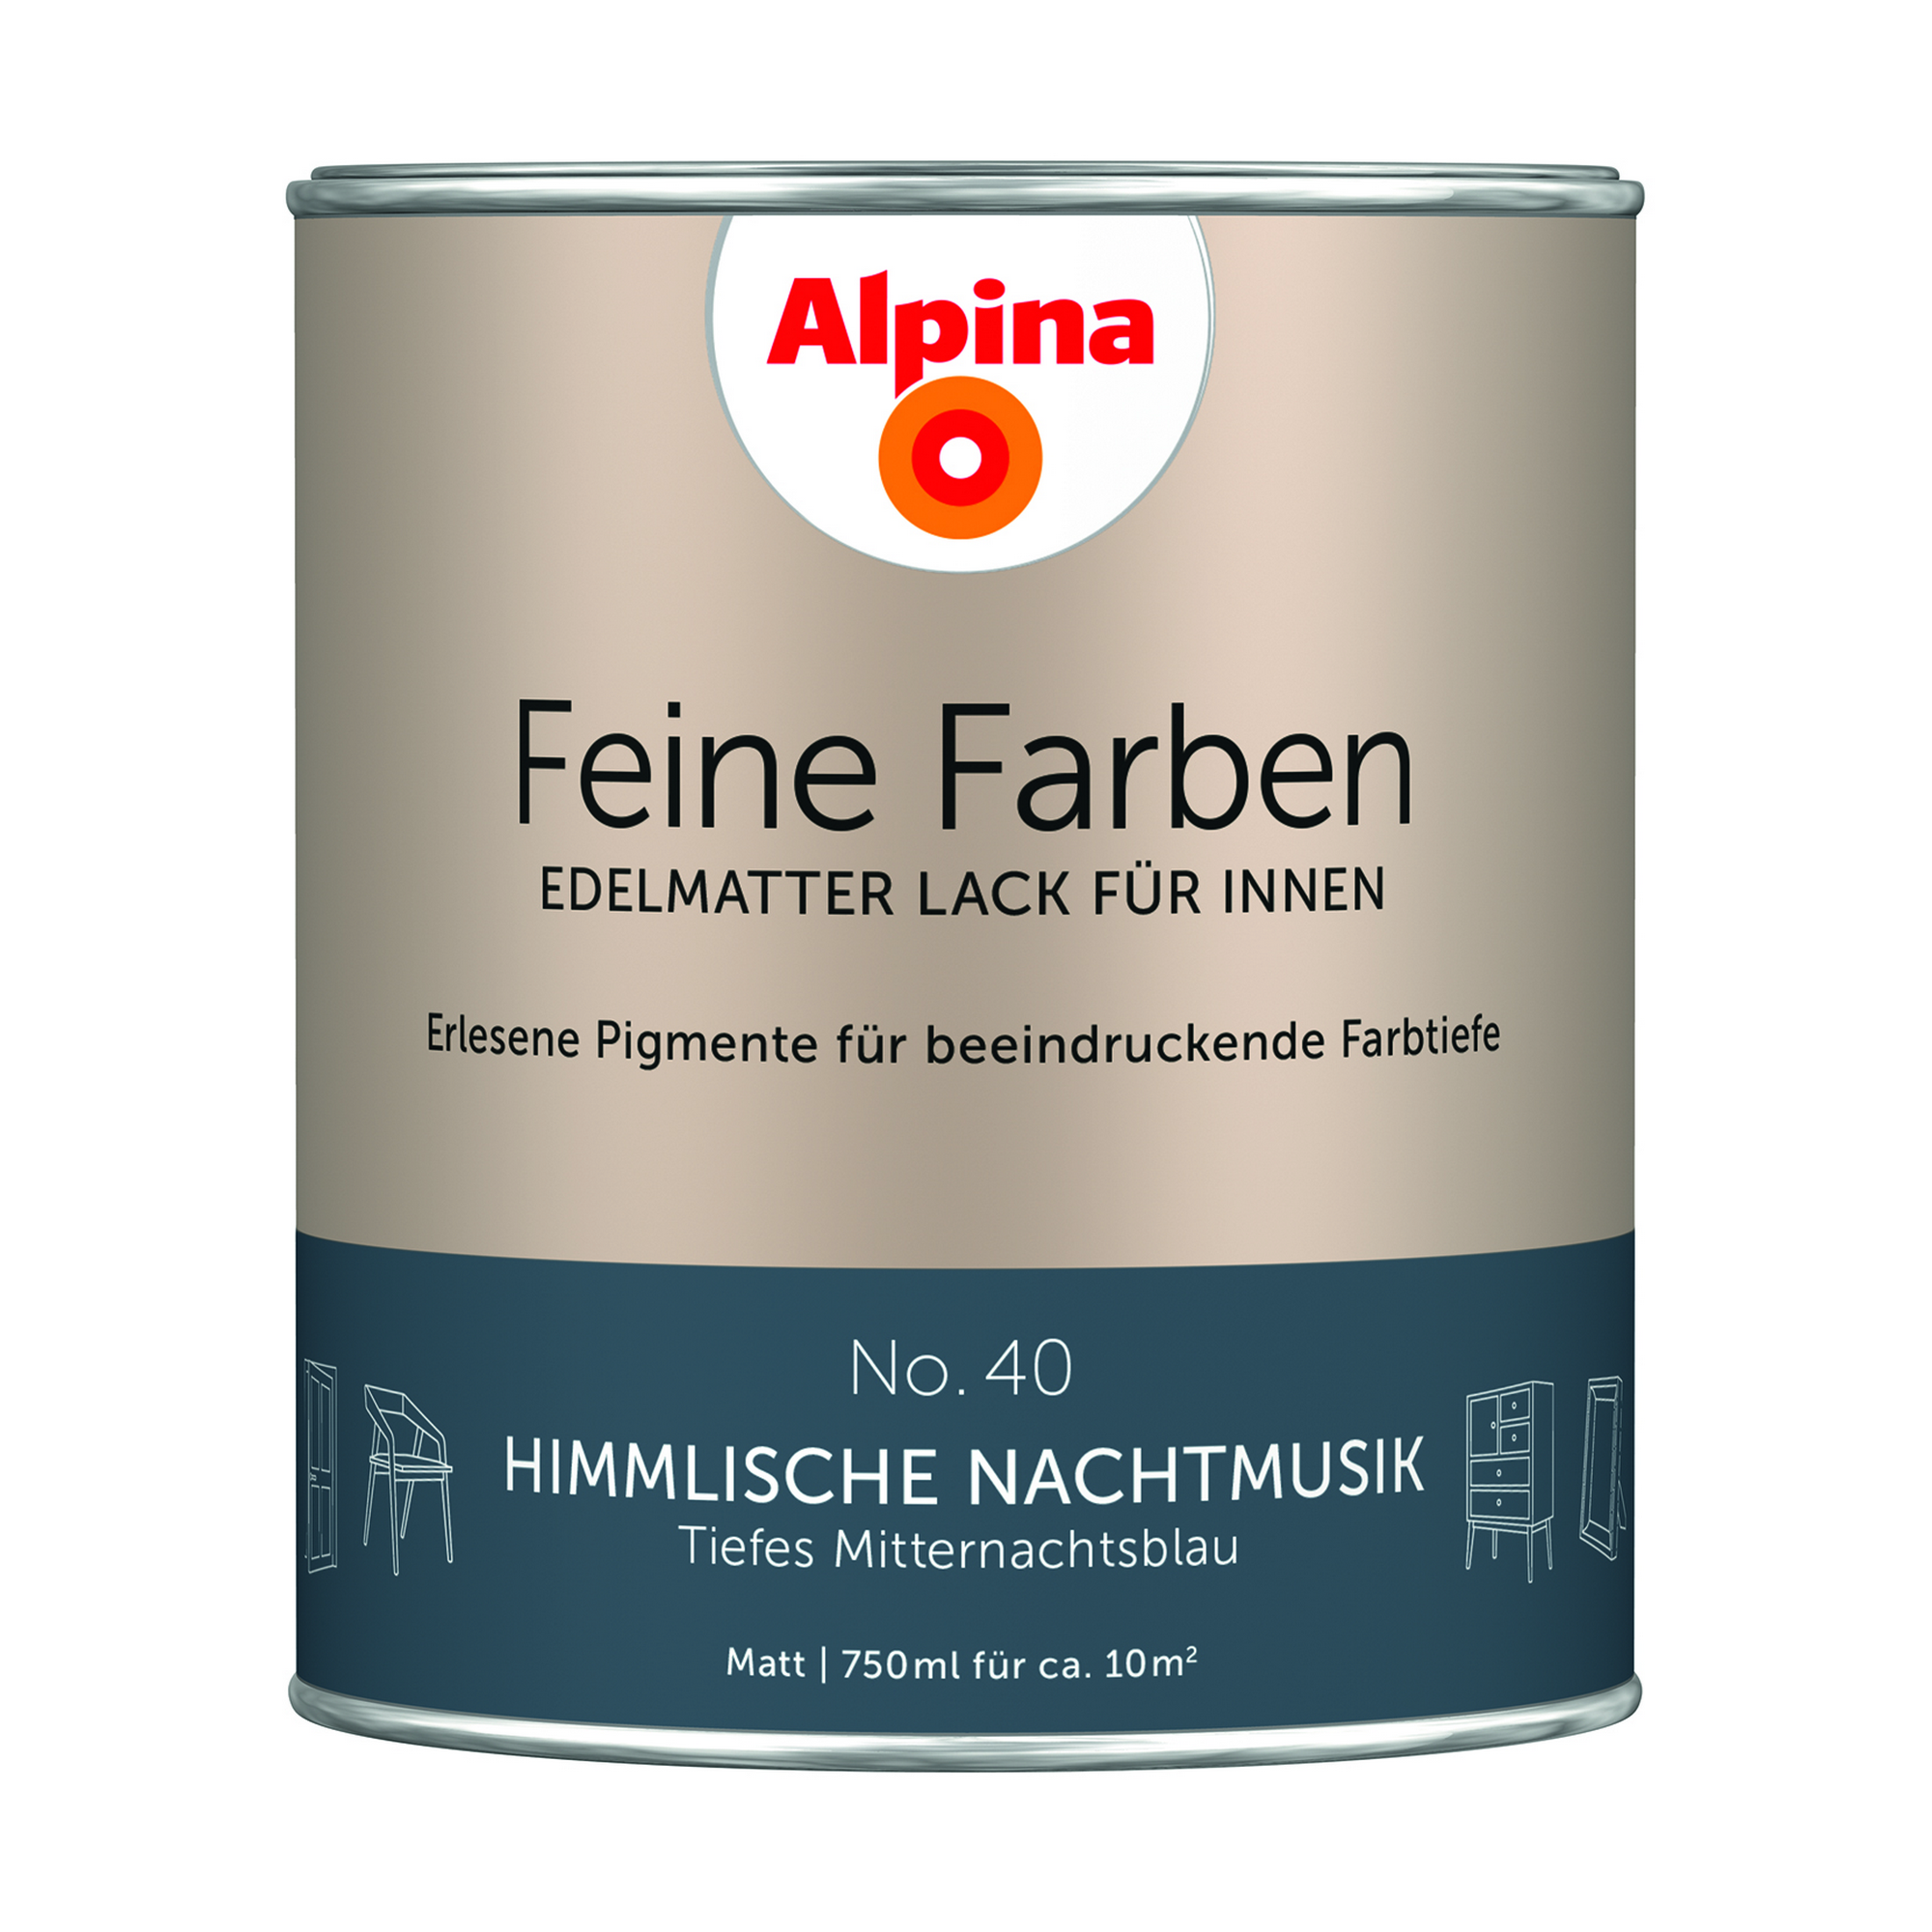 Feine Farben 'Himmlische Nachtmusik' mitternachtsblau matt 750 ml + product picture